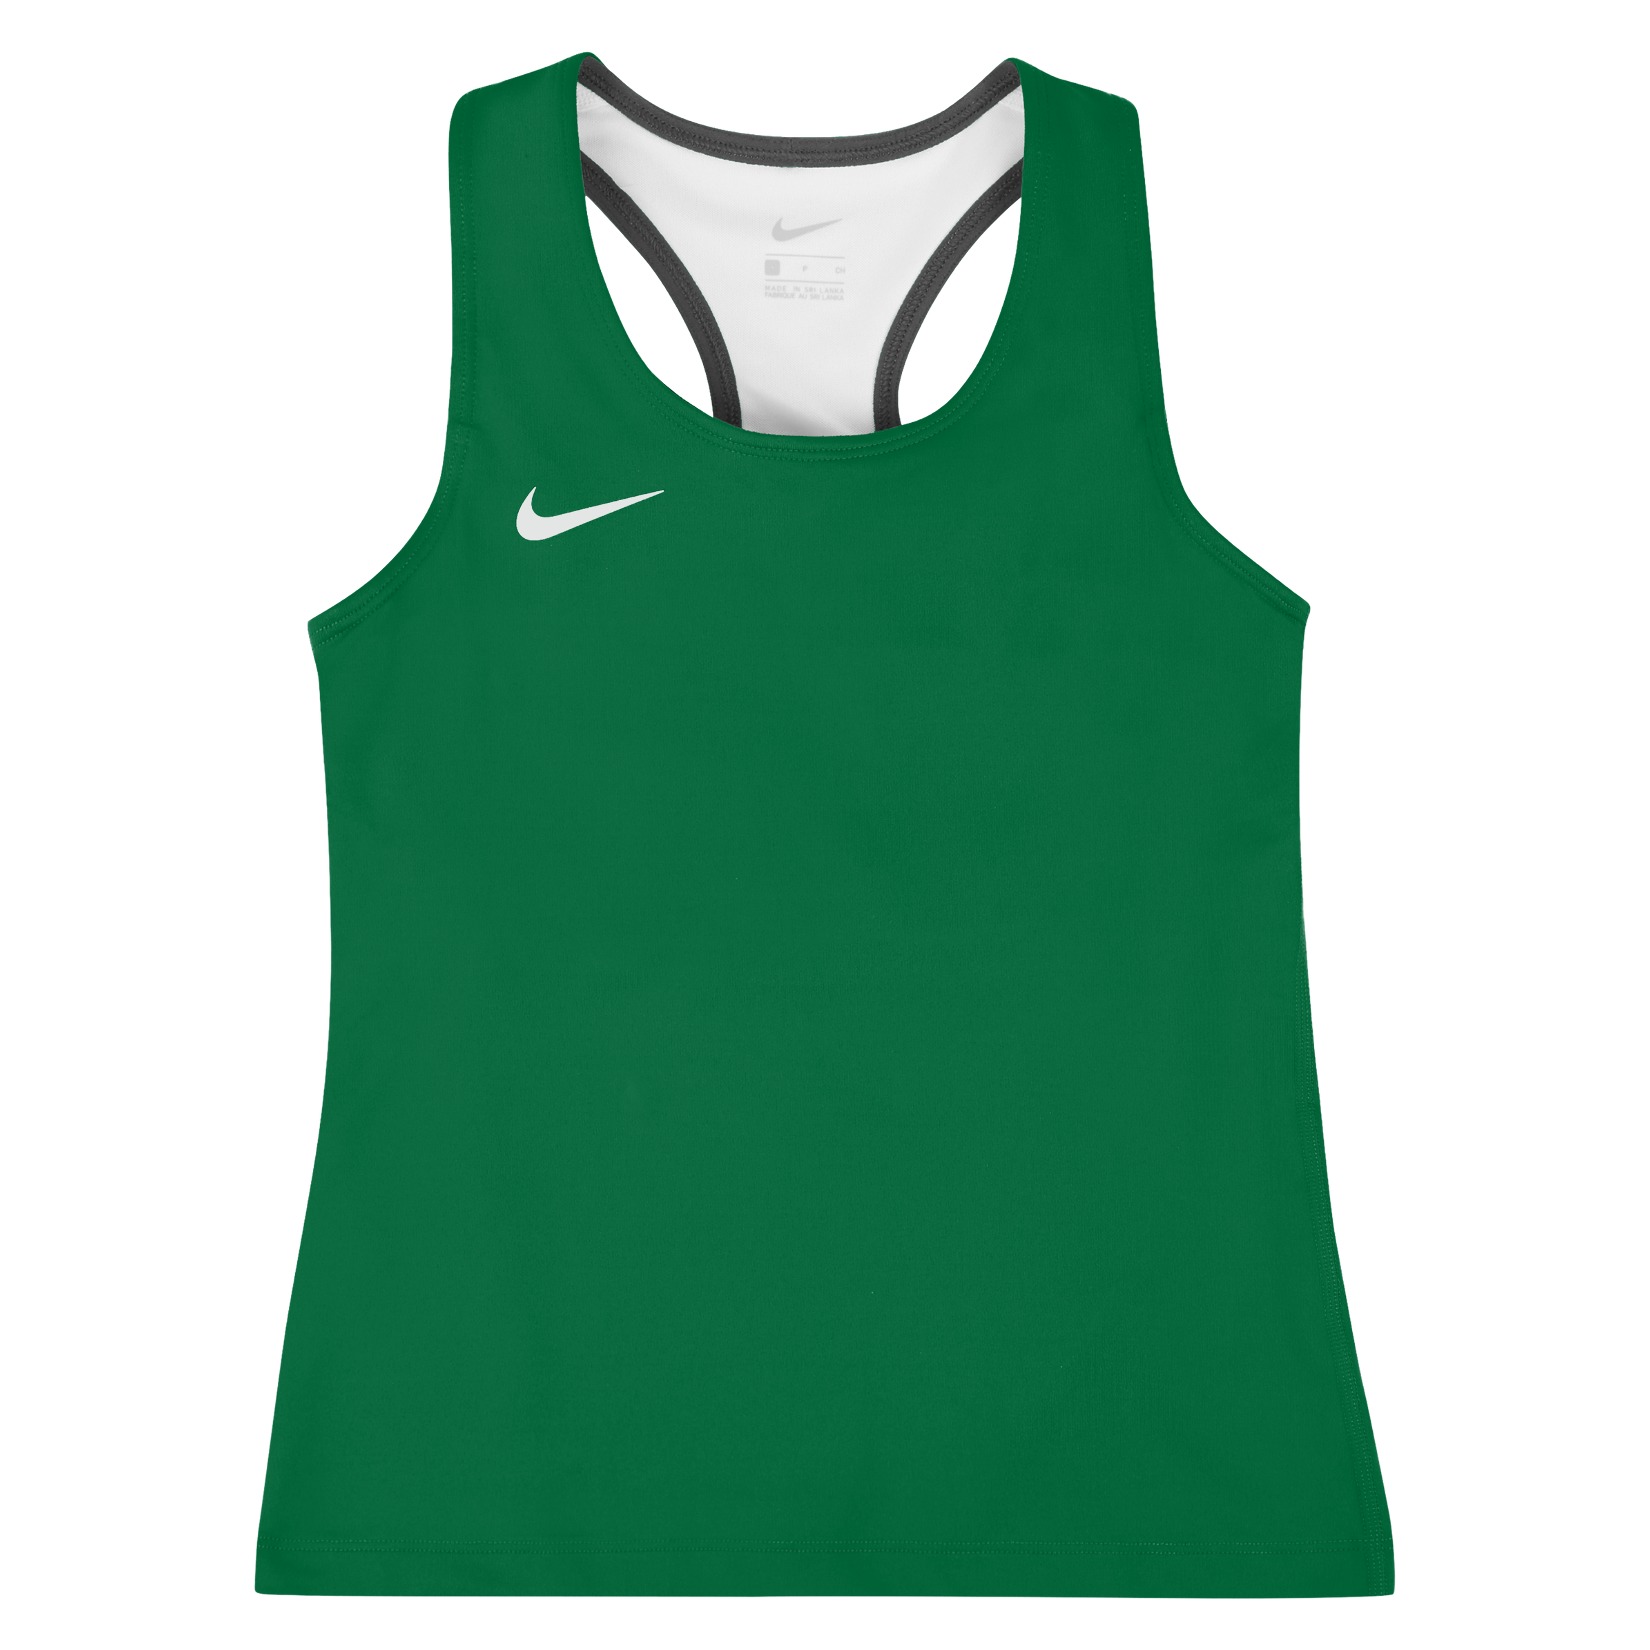 Nike Womens Airborne Running Top Pine Green-White